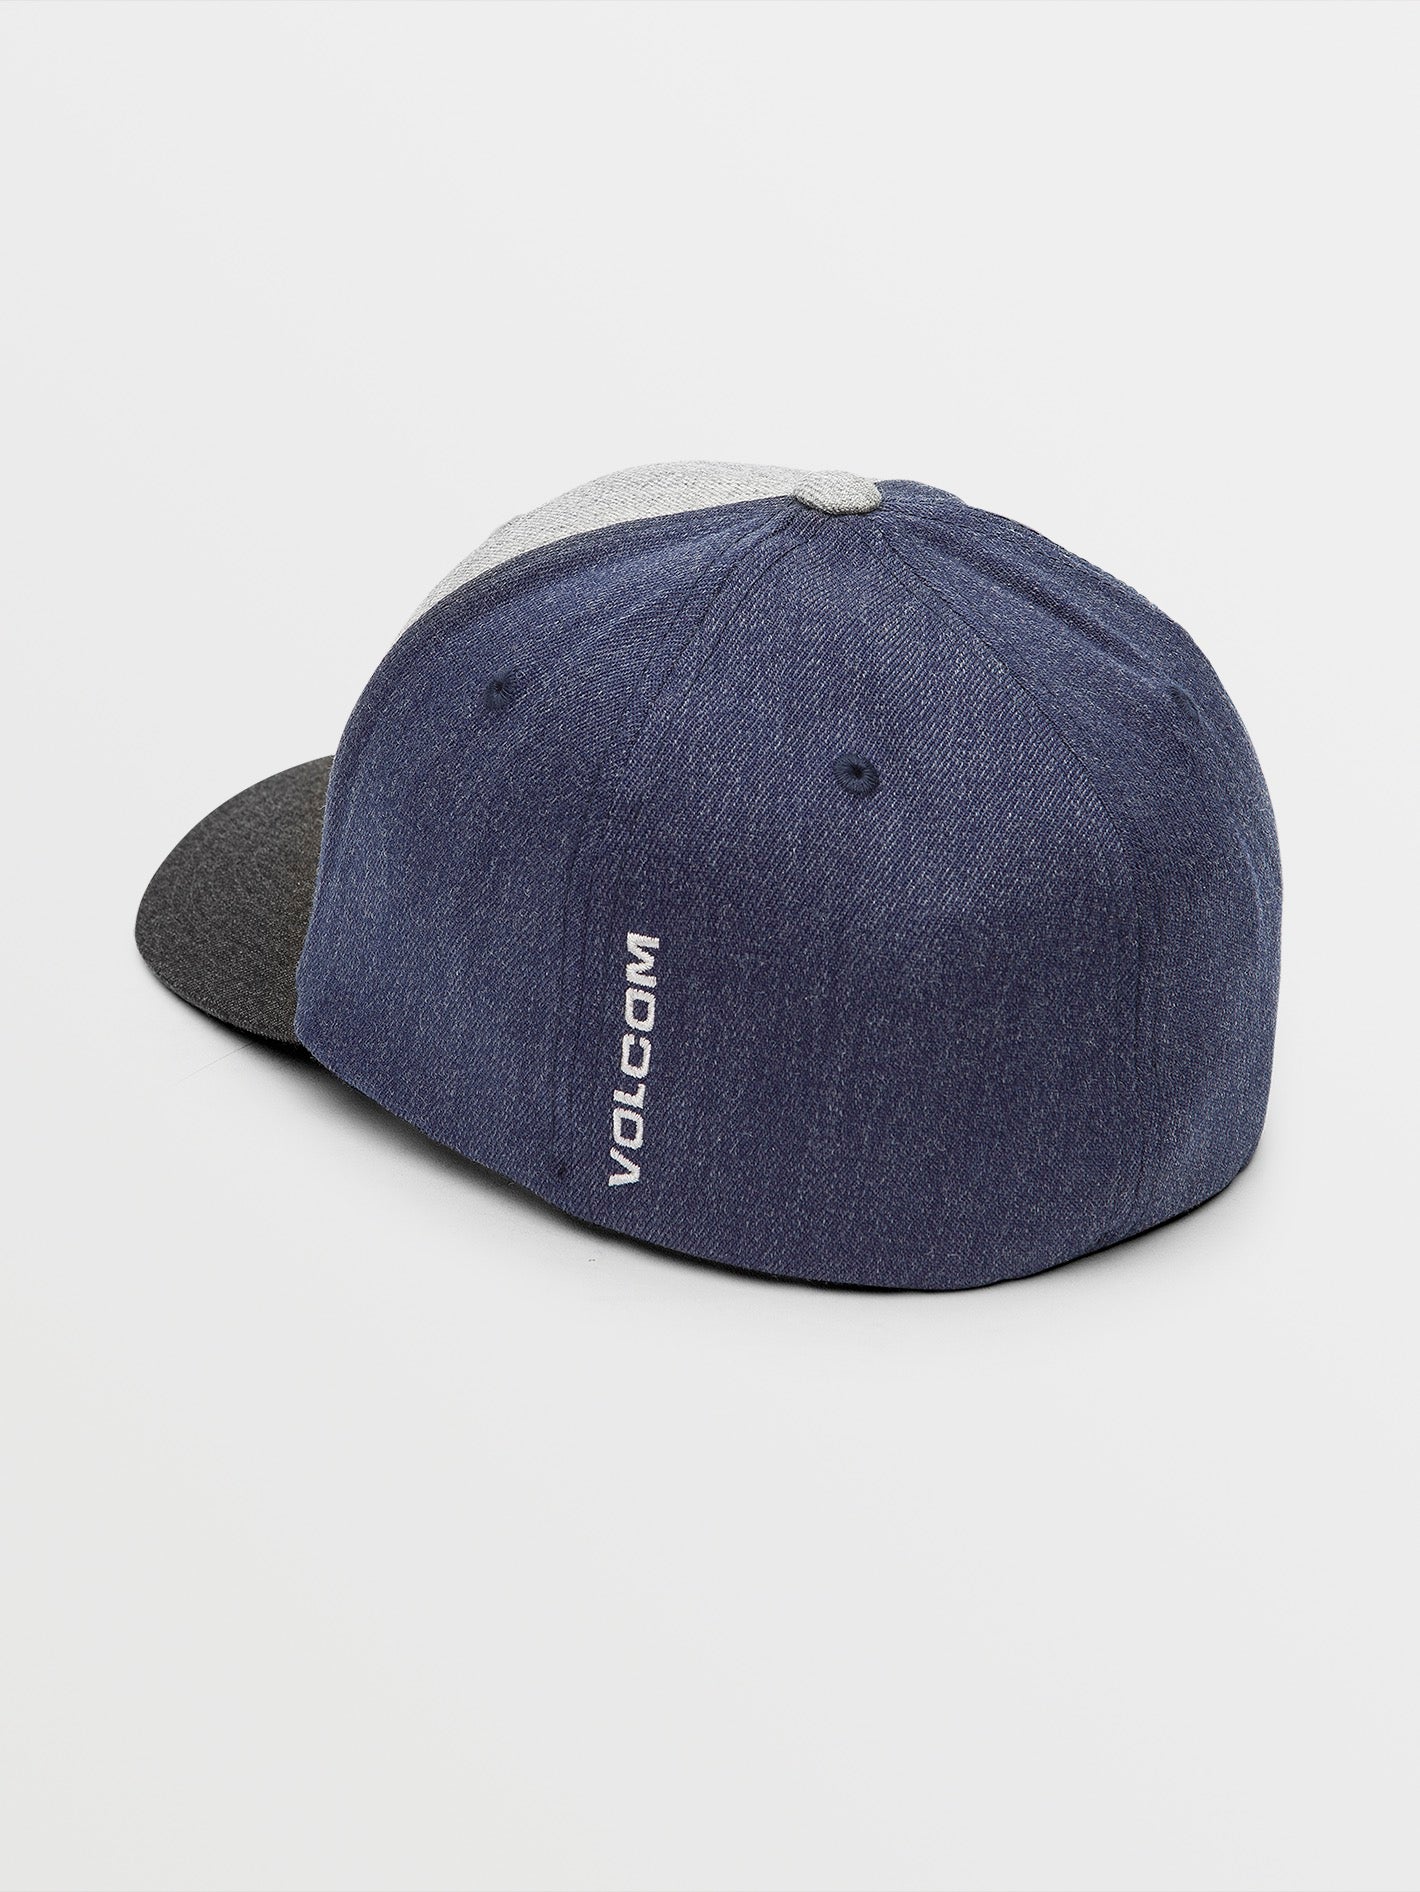 MEN'S VOLCOM ORIGINAL FLEXFIT HAT FITTED HAT CAP SIZE: S/M, L/XL